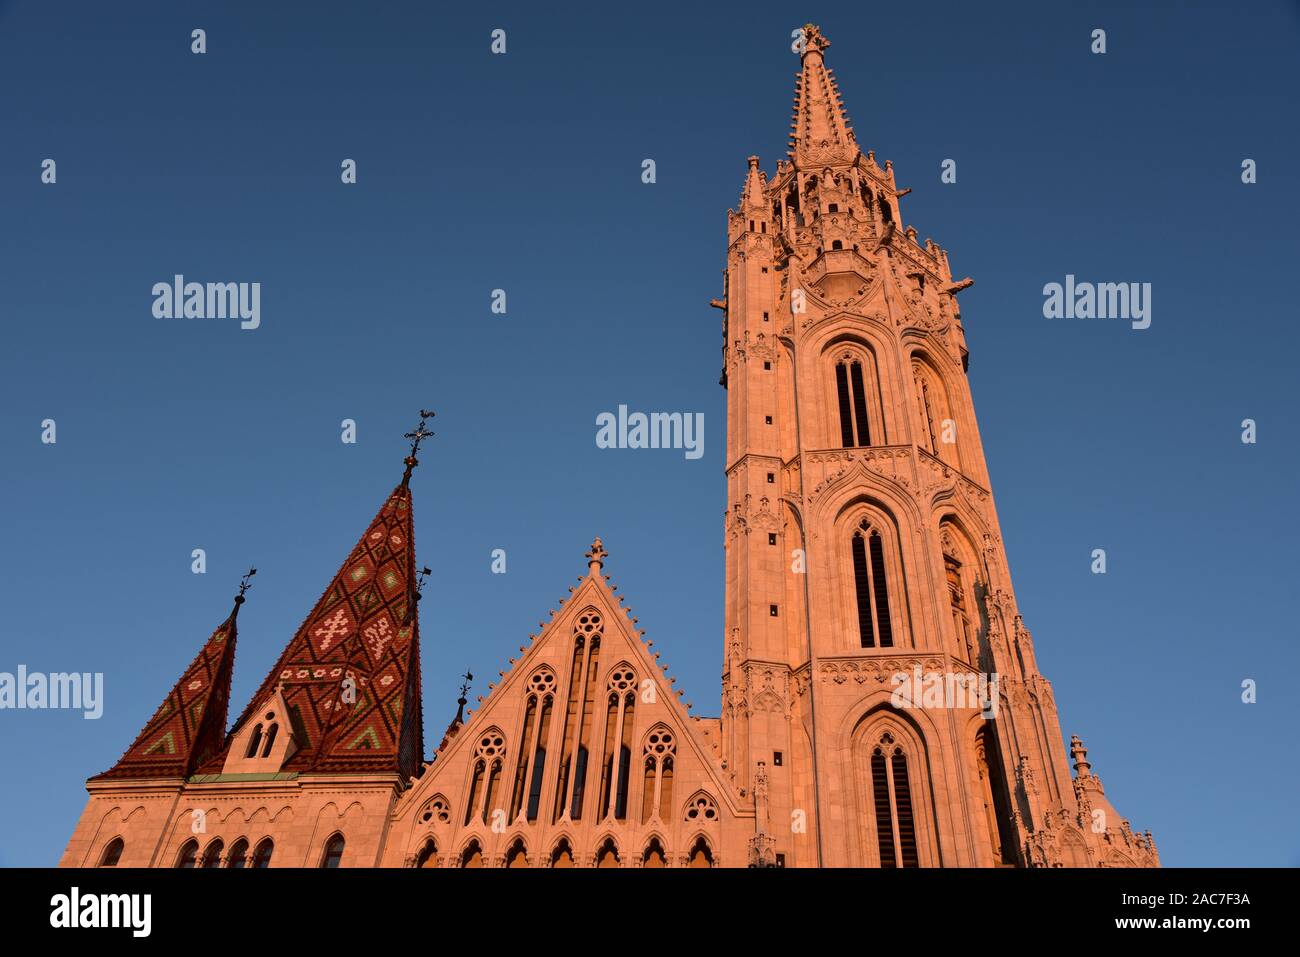 Der Turm und Dach des Mátyás Kirche aalen Sie sich in der herrlich am späten Nachmittag Sonne, Burgviertel, Budapest, Ungarn, Europa. Stockfoto